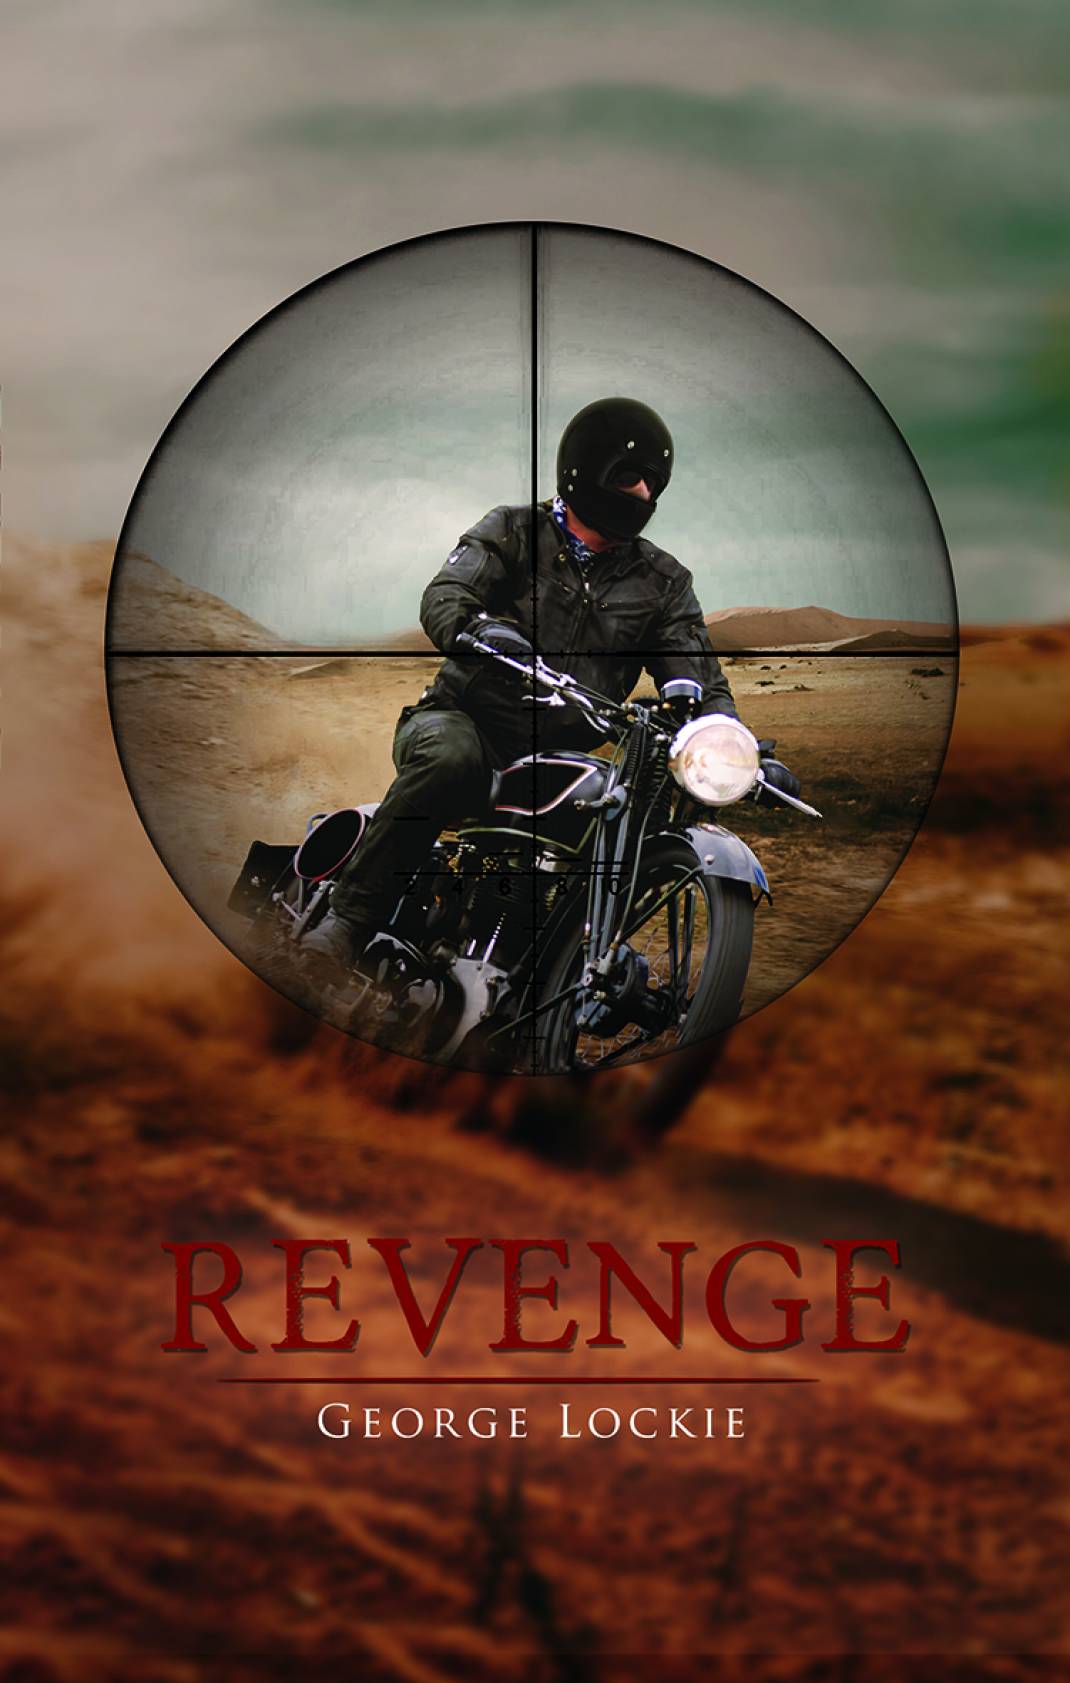 Revenge by George Lockie